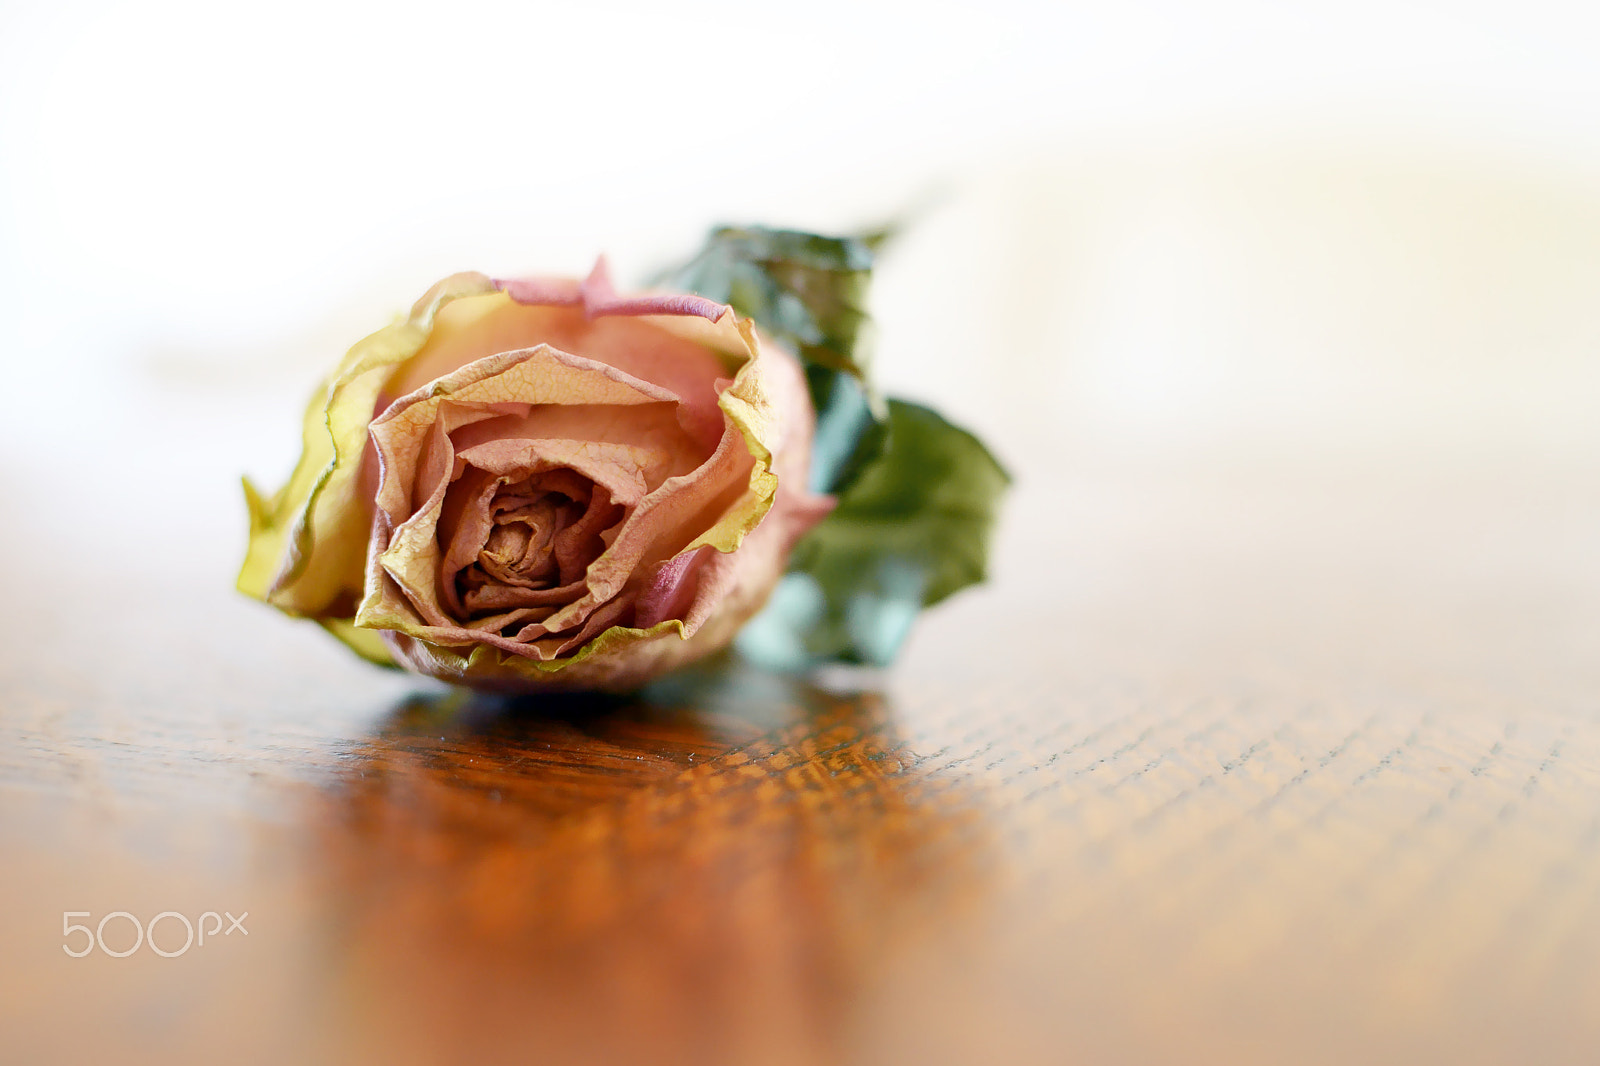 AF Zoom-Nikkor 35-105mm f/3.5-4.5D sample photo. Bellissima rosa appassita photography